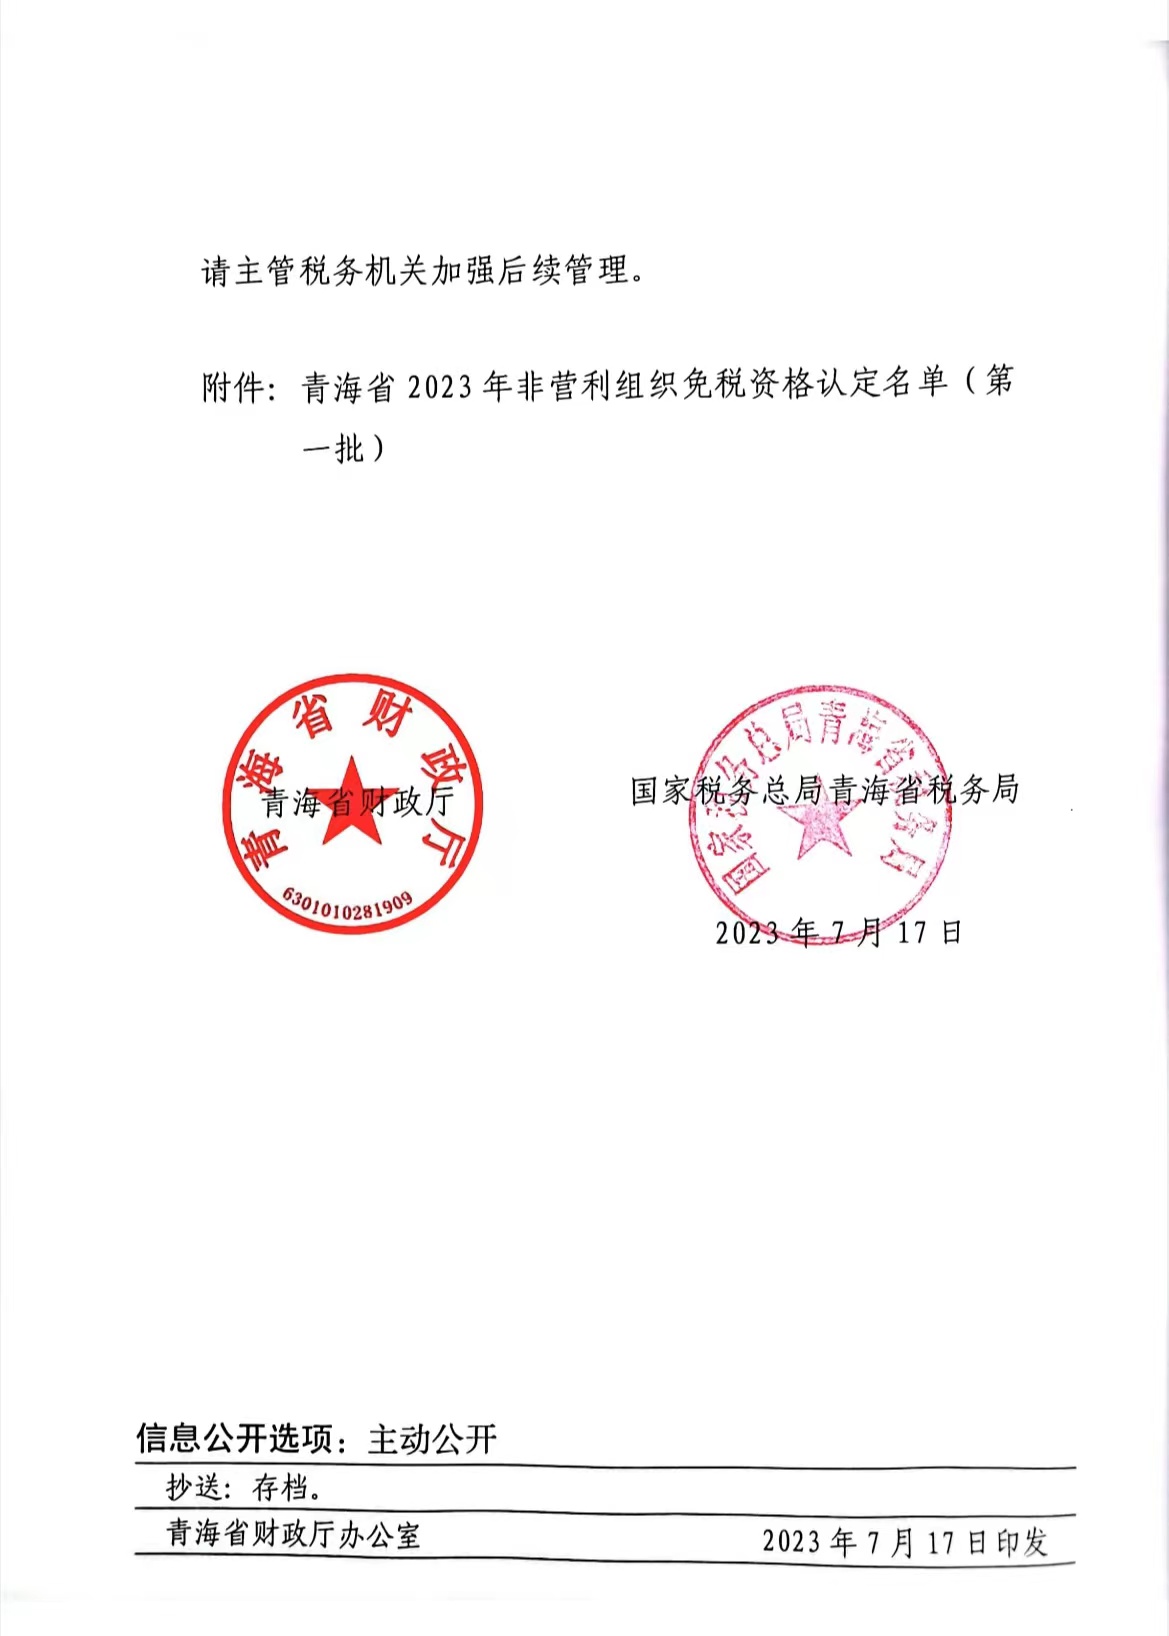 2023年非營利社會(huì)組織免稅資格認定名單的文件.jpg